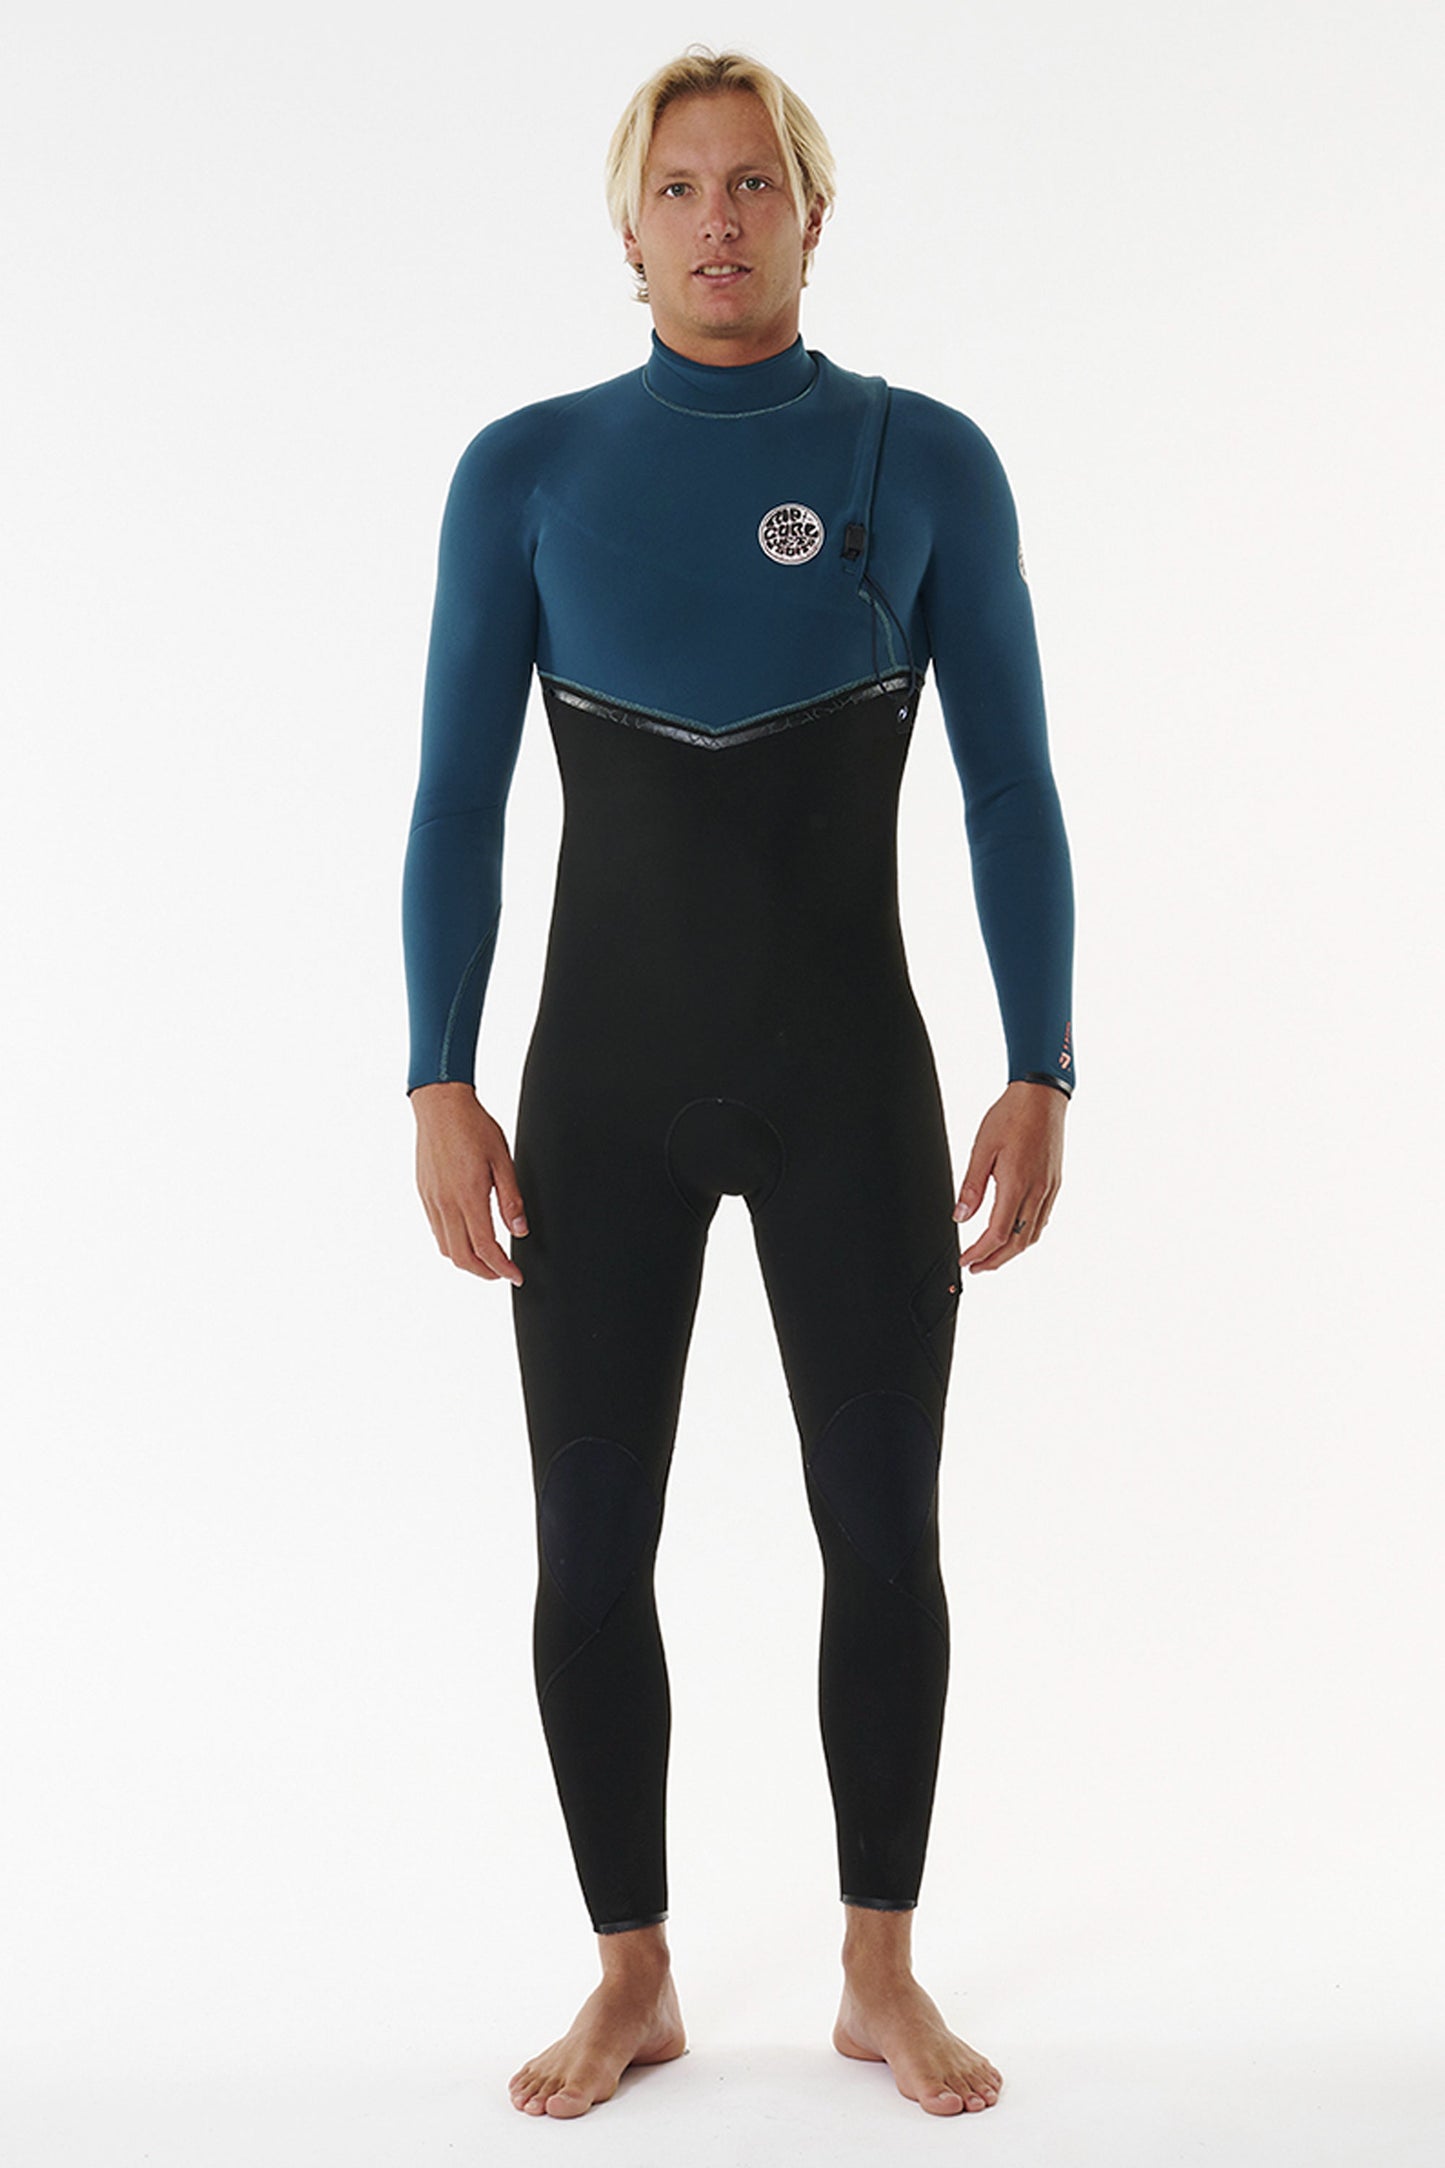 Pukas-Surf-Shop-Rip-Curl-wetsuit-man-e-bomb-4-3-zip-blue-green